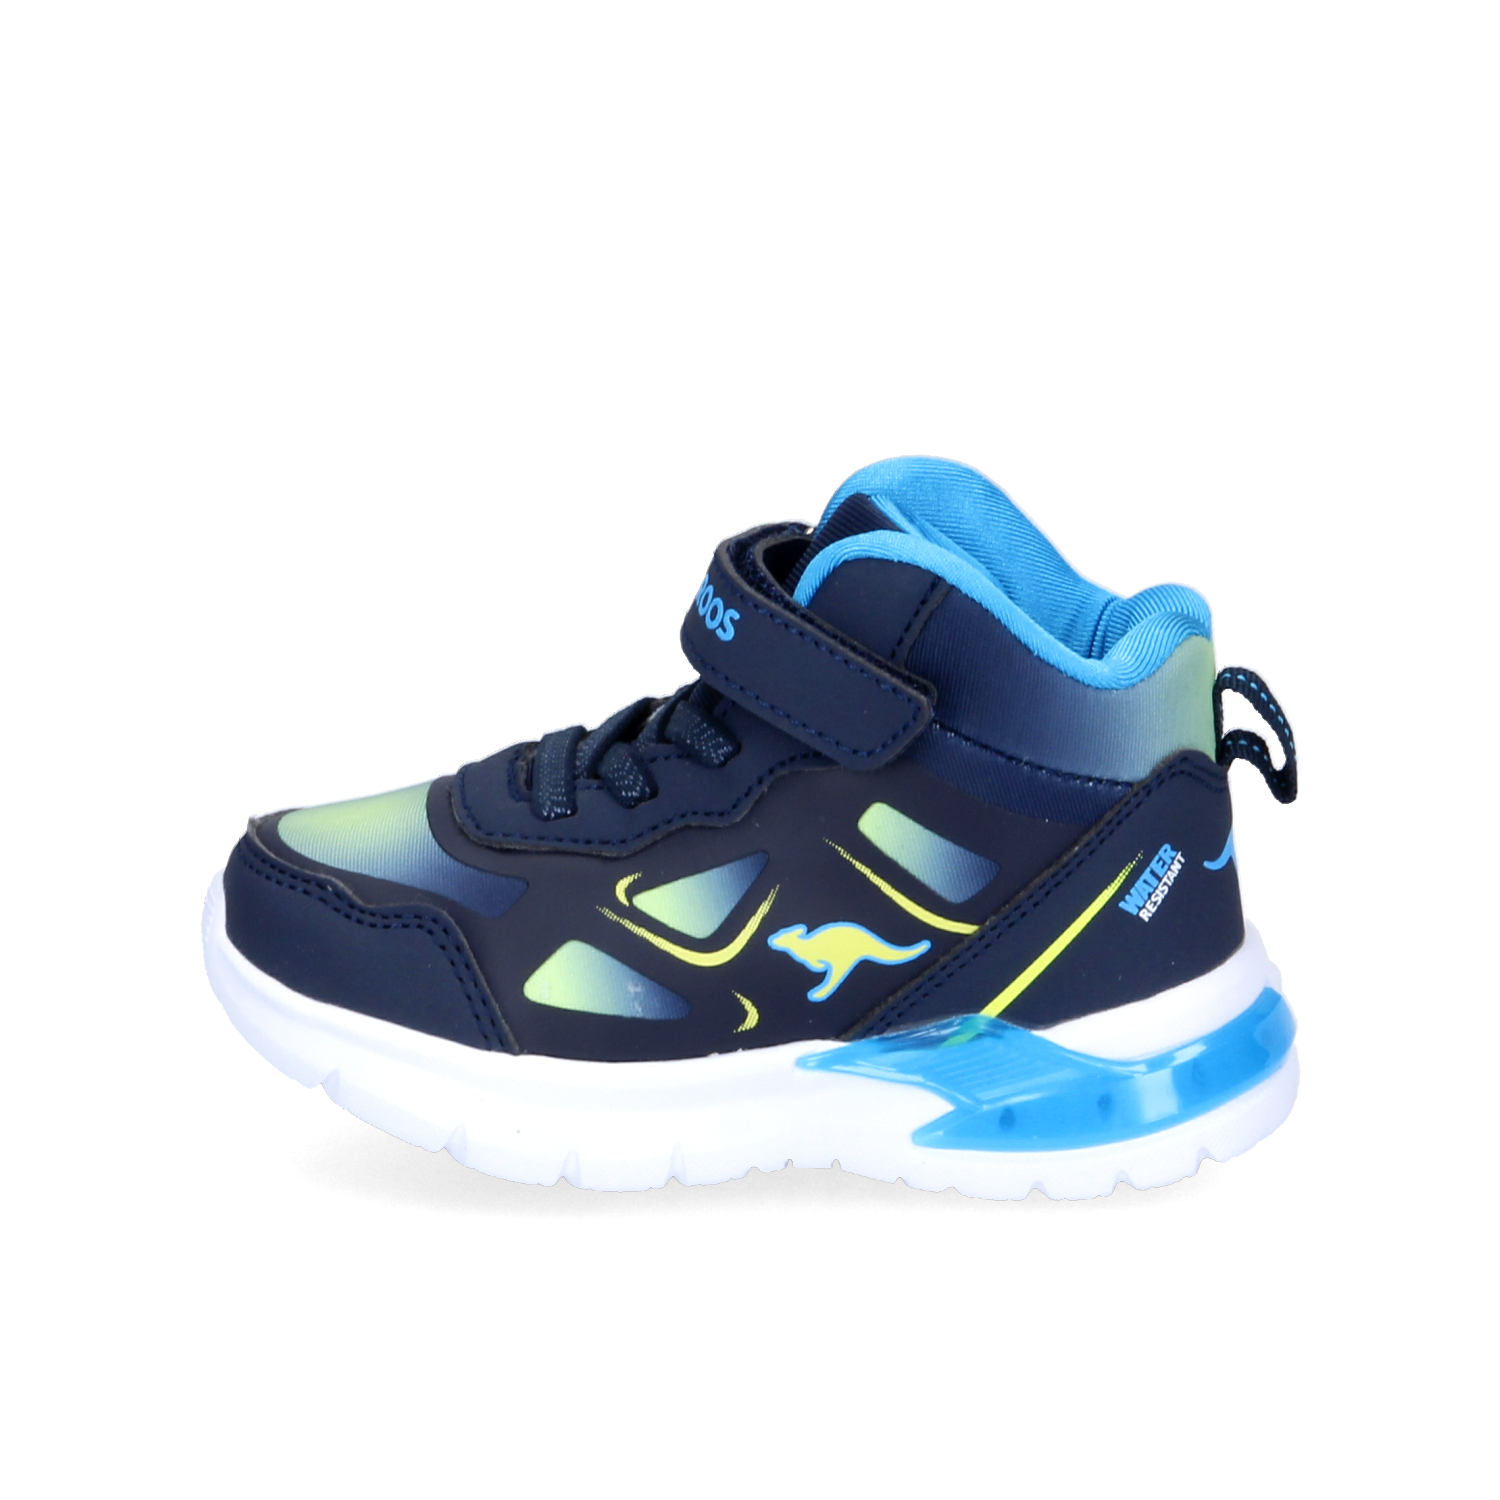 Reno-Schuhe-KangaROOS-Sneaker-High-Jungen-blau